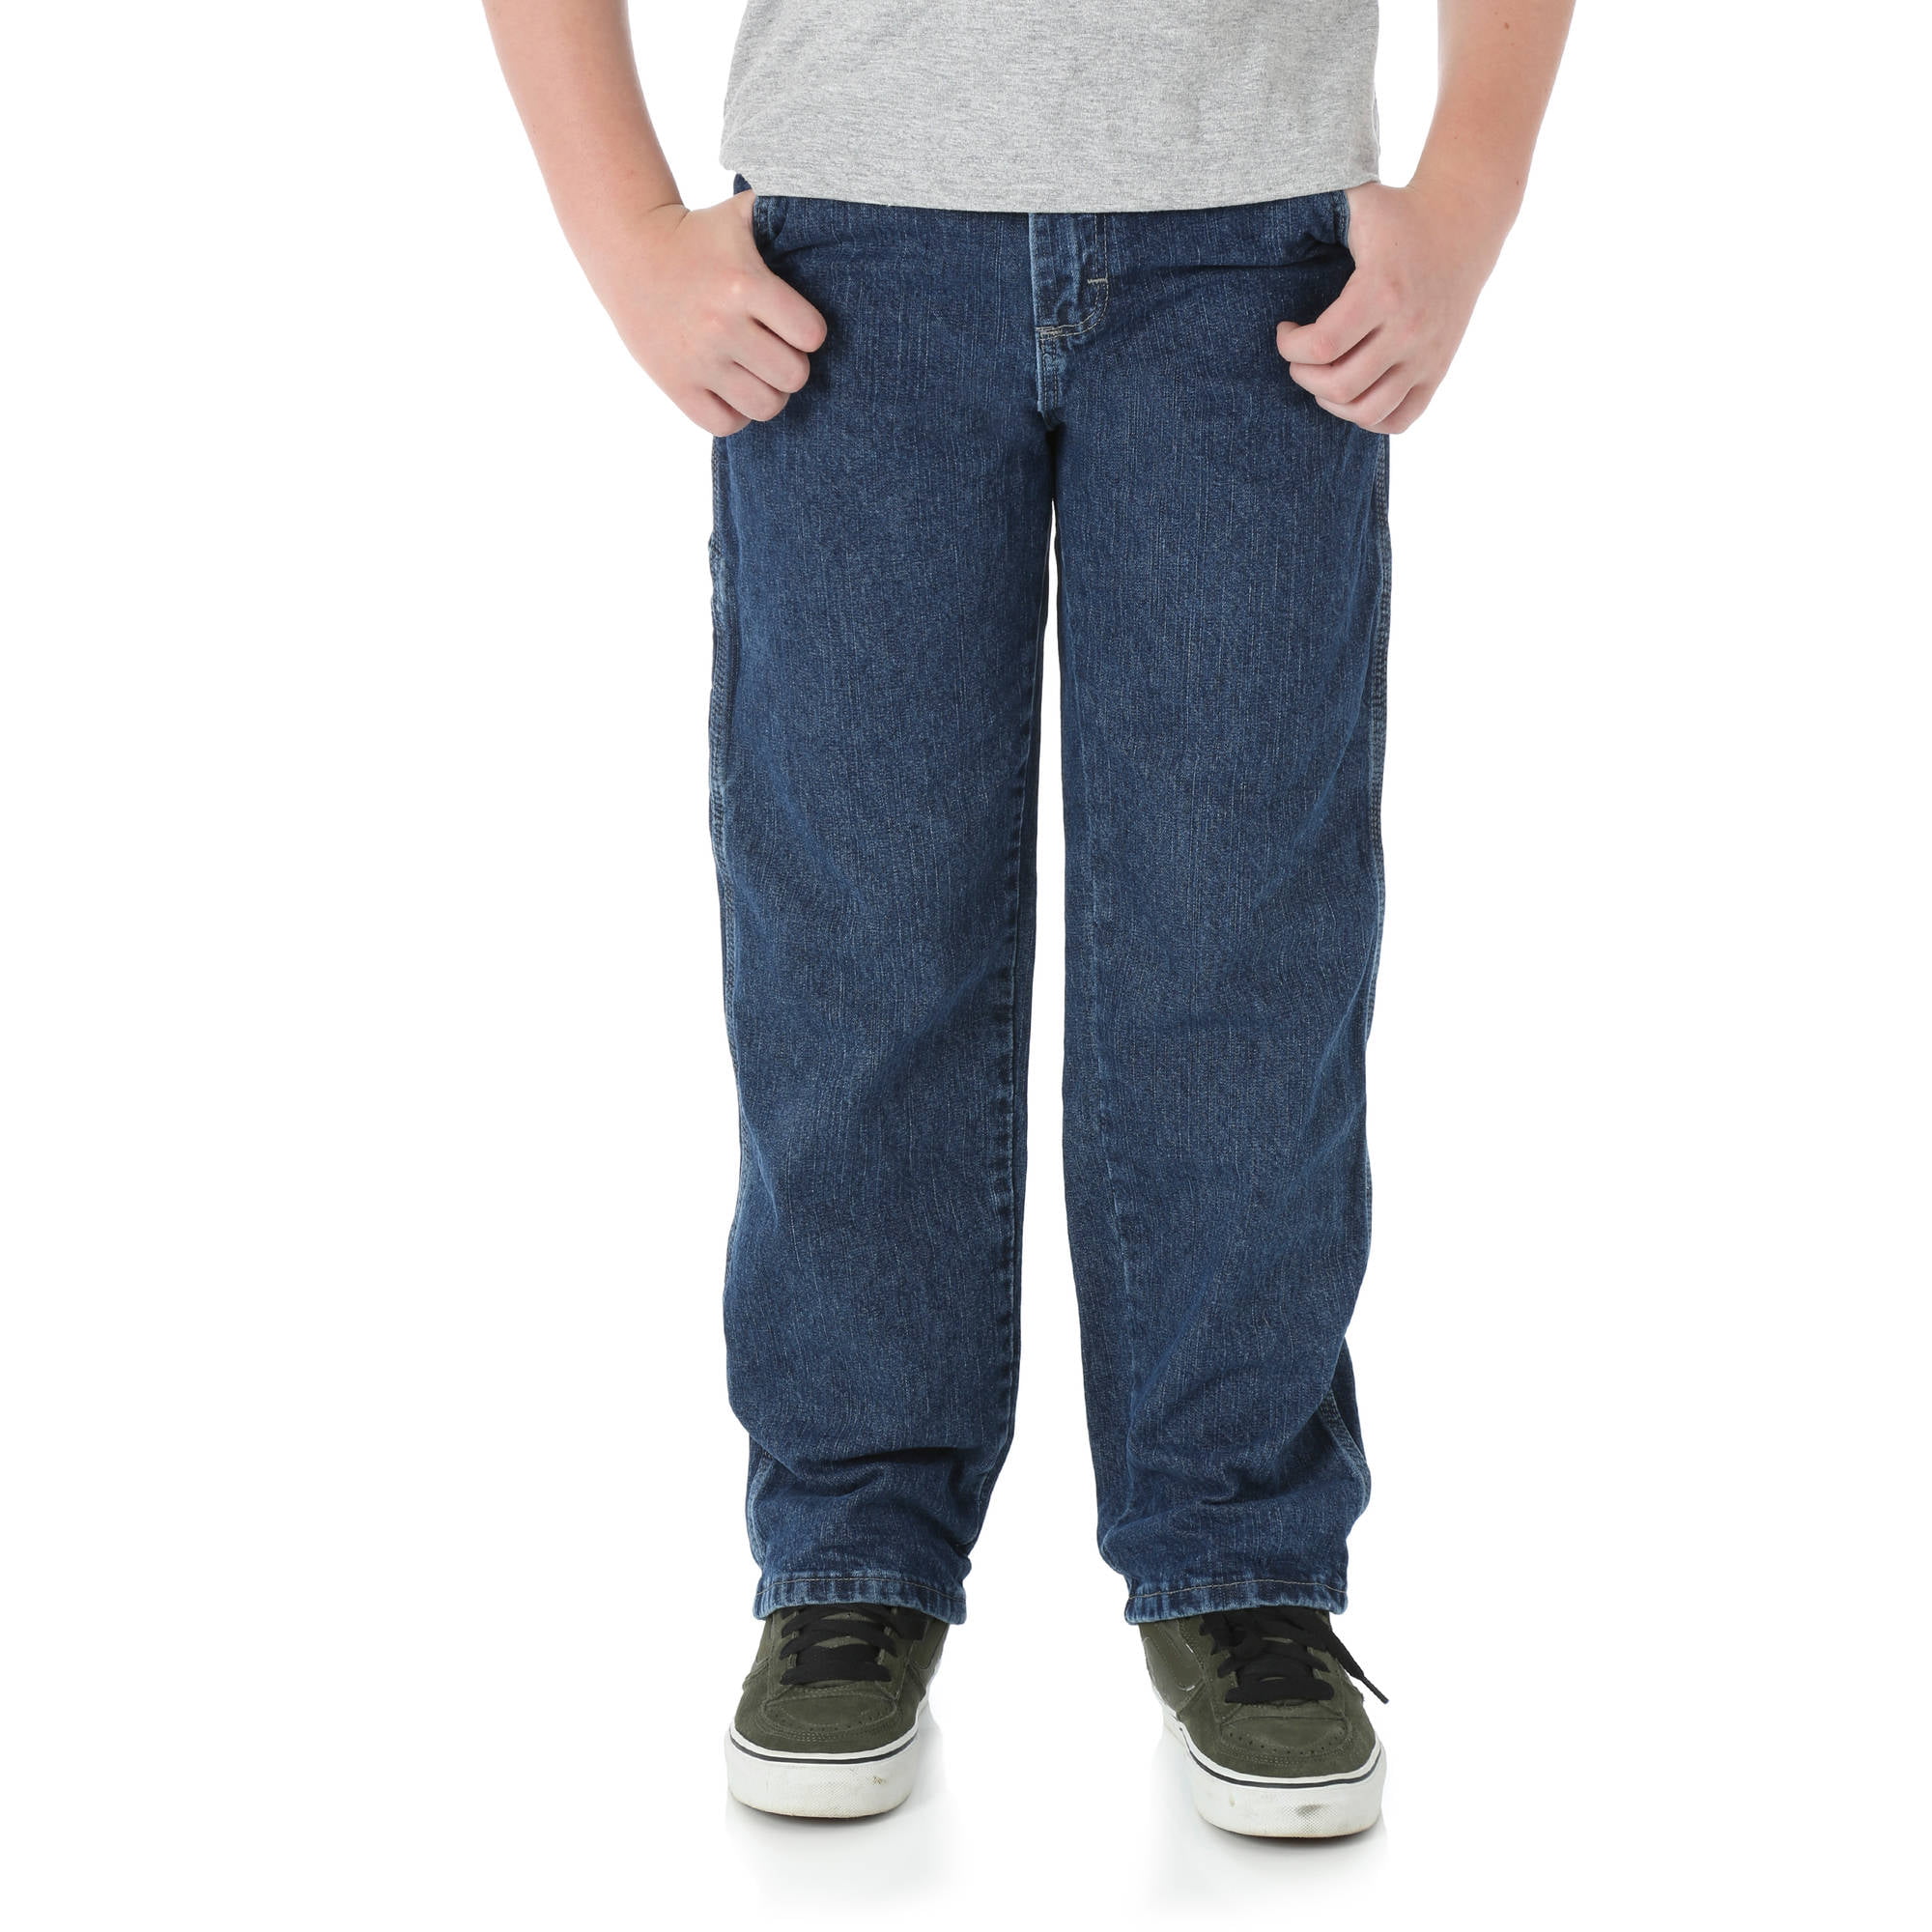 Wrangler Boys Relaxed Carpenter Fit Jeans Sizes 4-16 & Husky 